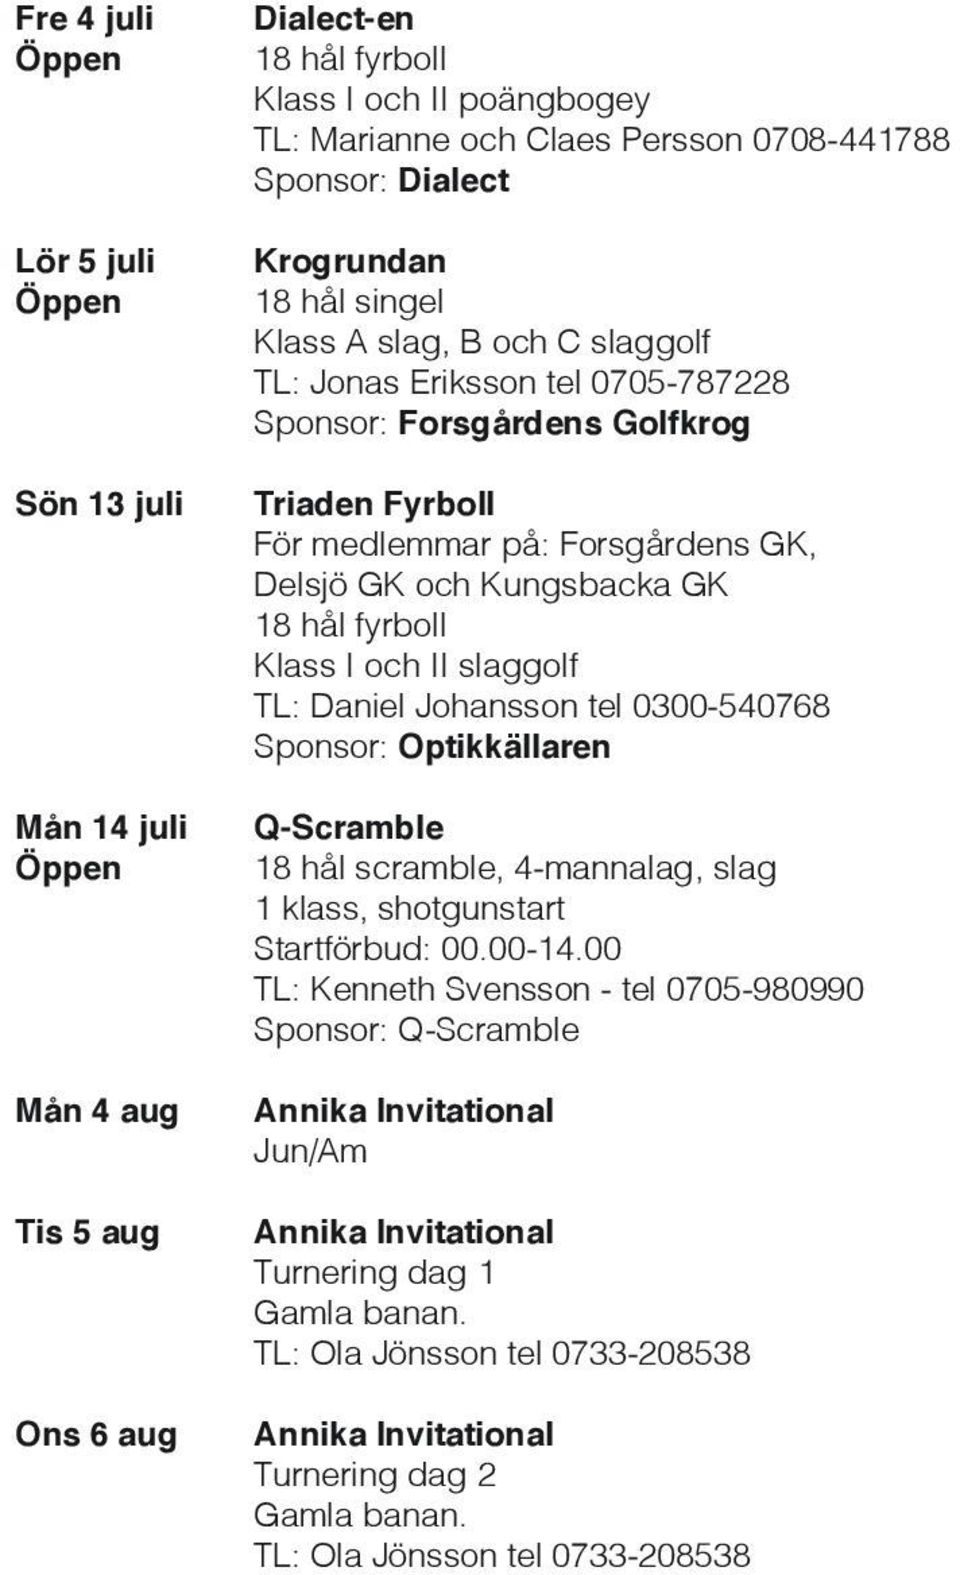 fyrboll Klass I och II slaggolf TL: Daniel Johansson tel 0300-540768 Sponsor: Optikkällaren Q-Scramble 18 hål scramble, 4-mannalag, slag 1 klass, shotgunstart Startförbud: 00.00-14.